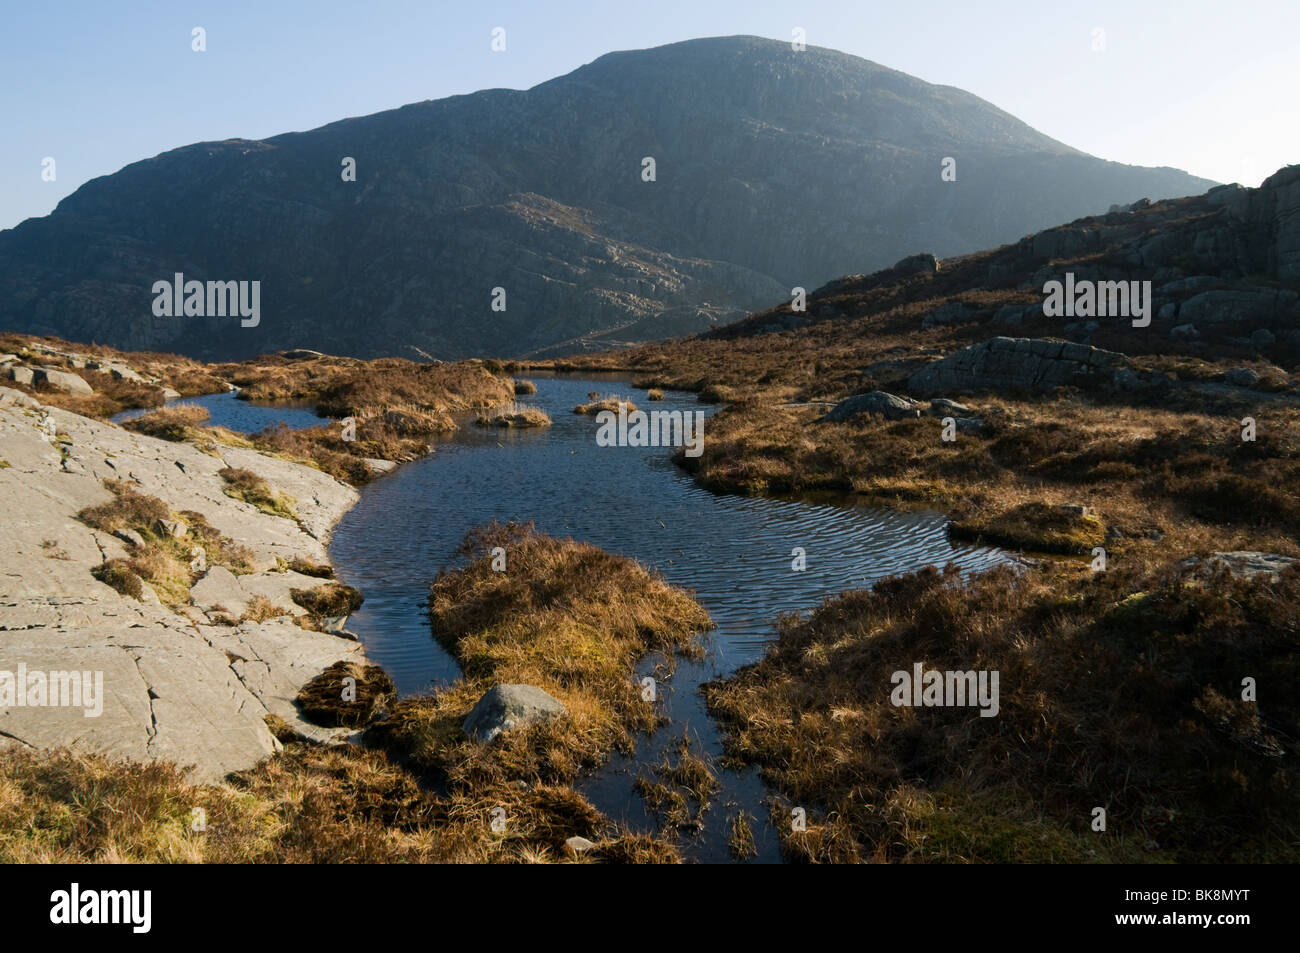 Y Llethr from Rhinog Fach, Rhinog Mountains, Snowdonia, North Wales, UK Stock Photo